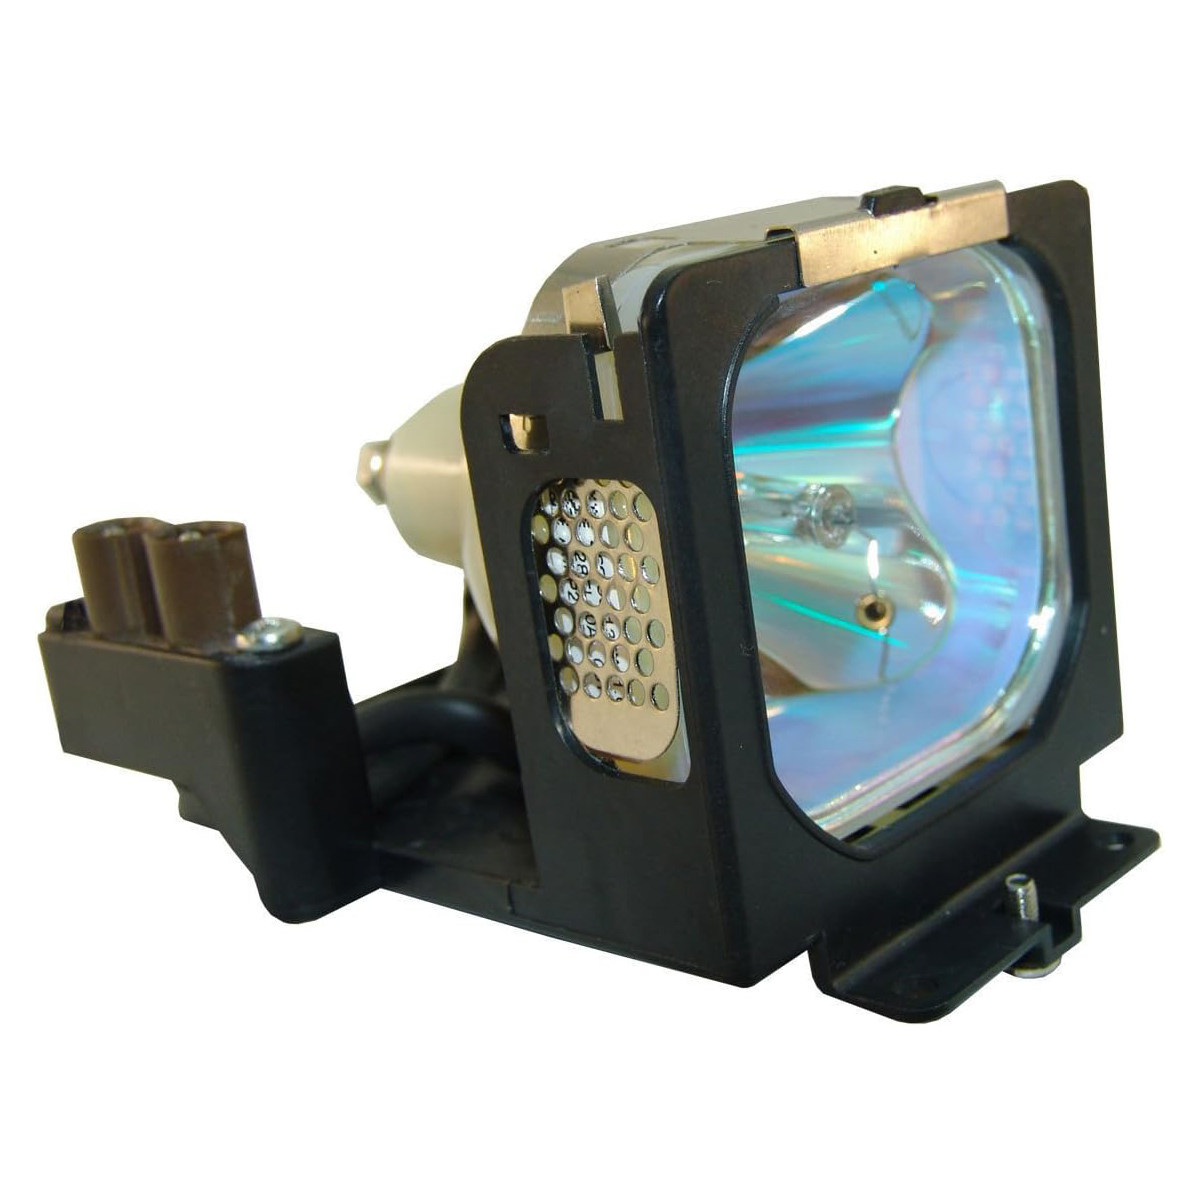 Replacement Projector lamp POA-LMP66 For Sanyo PL C-SE20 PLC-SE20A